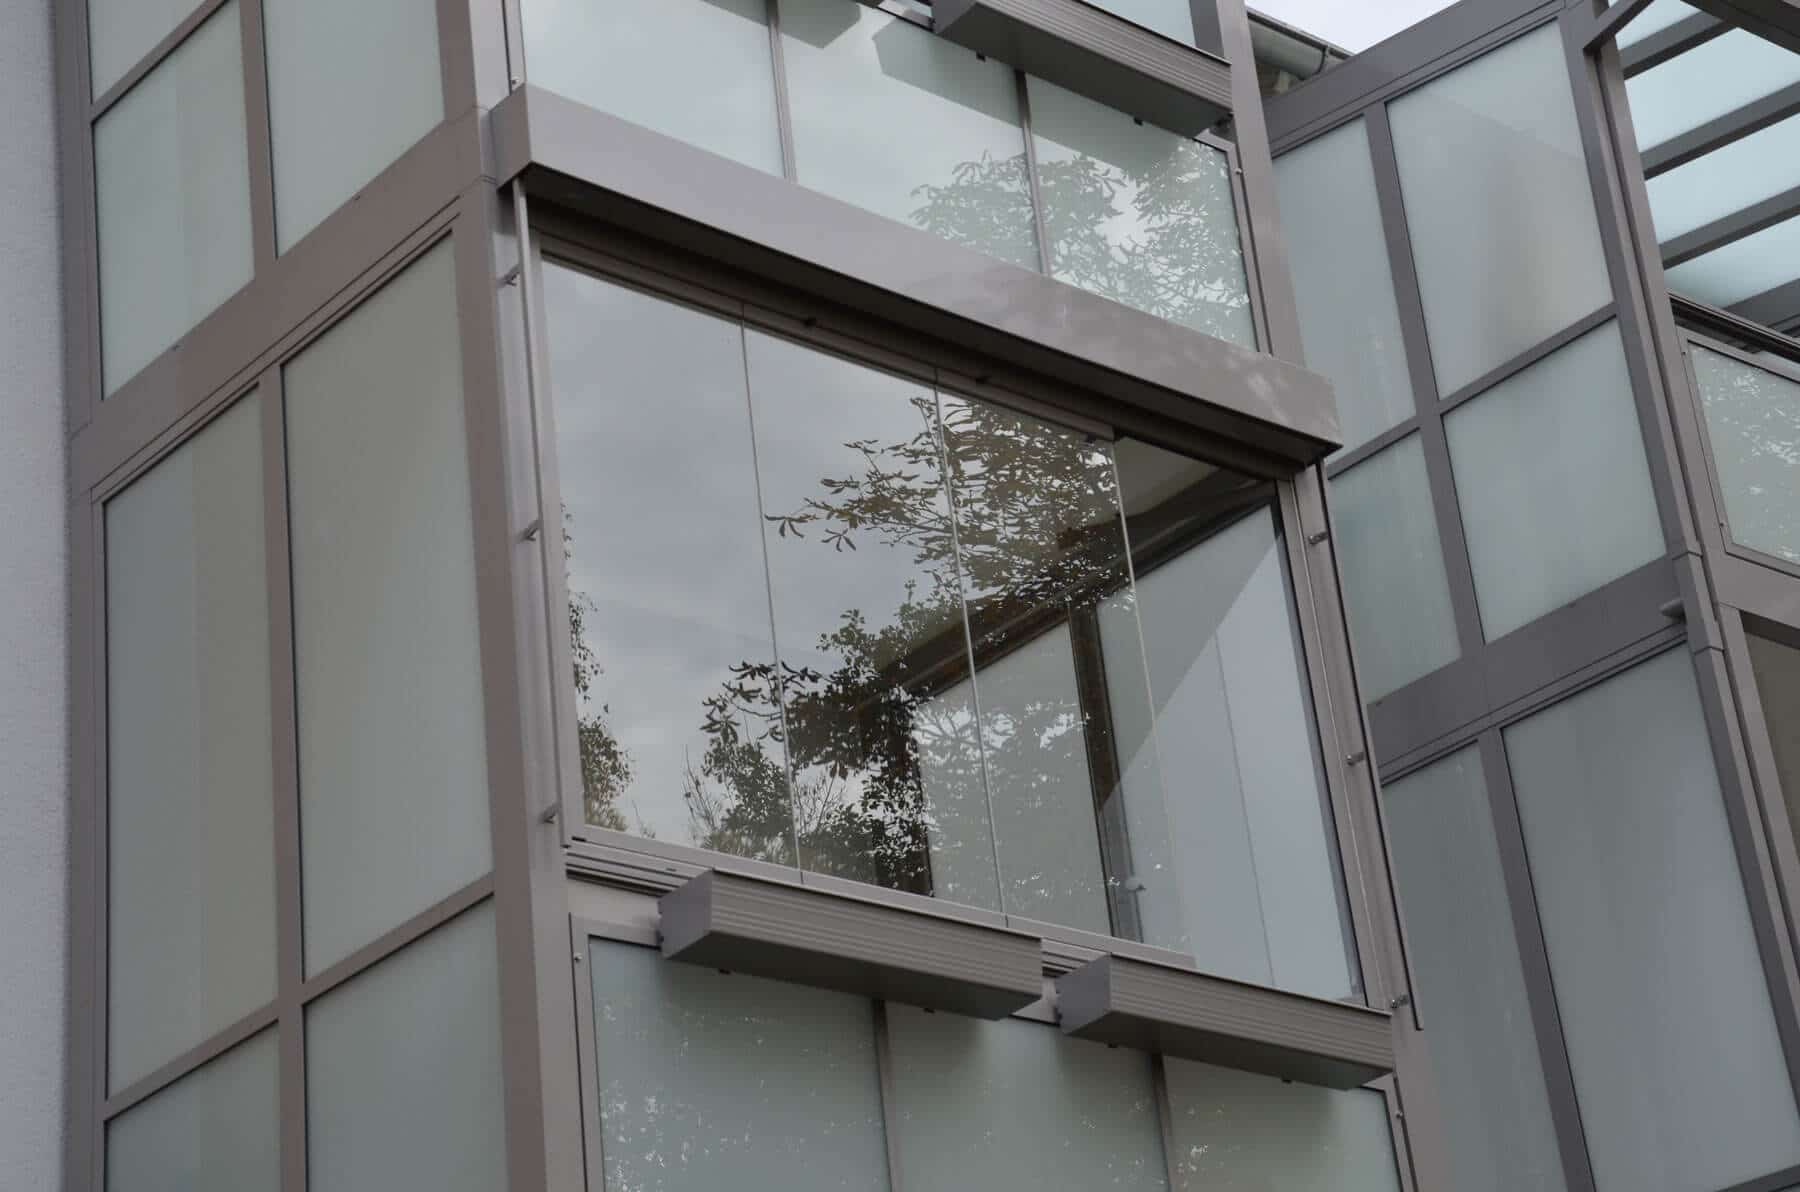 Faltelemente für Balkonverglasung in grau